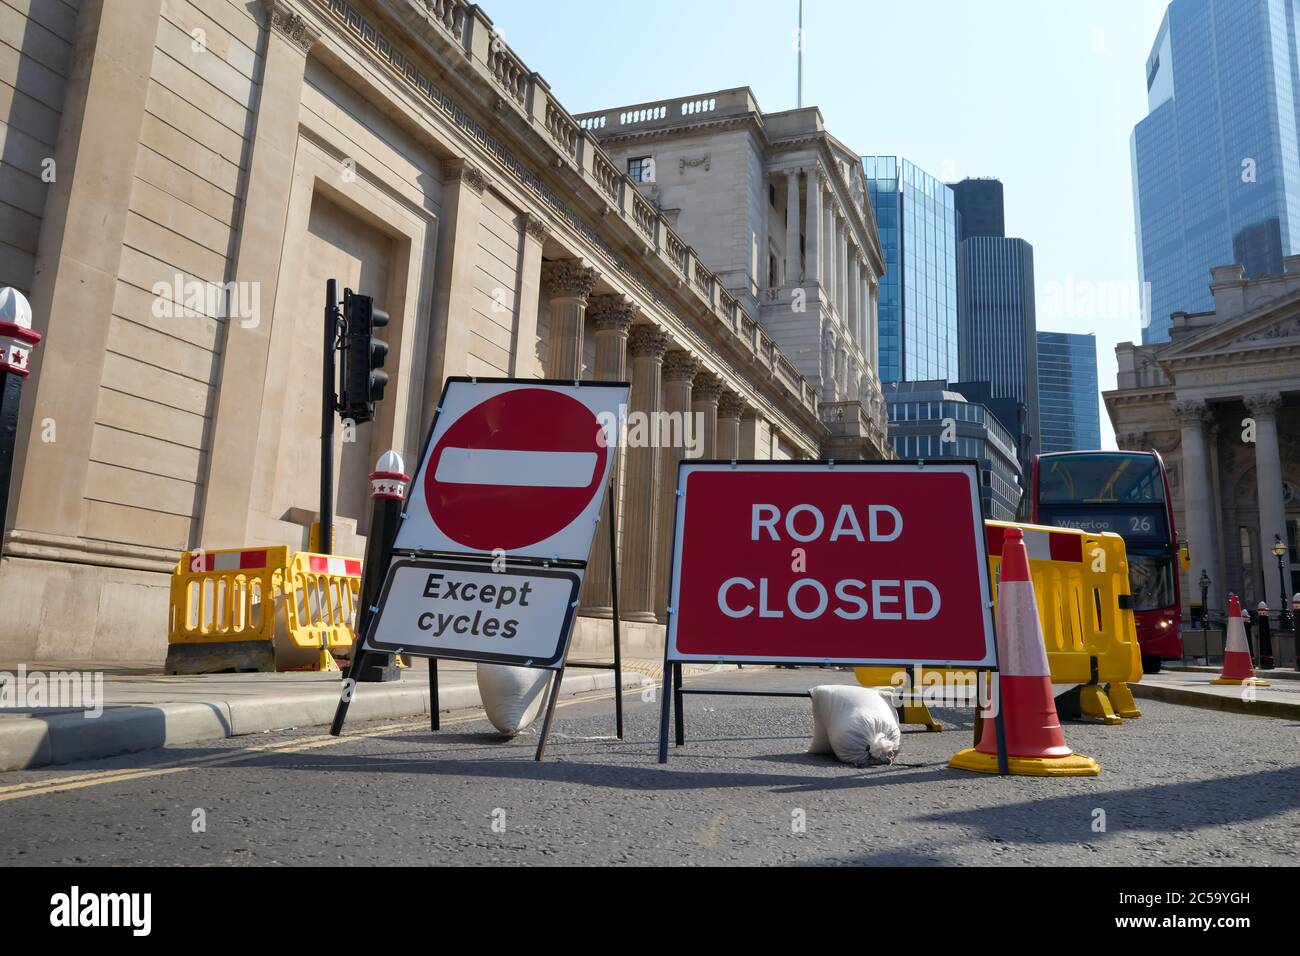 Fotografia della Banca d'Inghilterra con il cartello 'Road closed' e 'No Entry eccetto Cycles' davanti all'edificio. Foto Stock